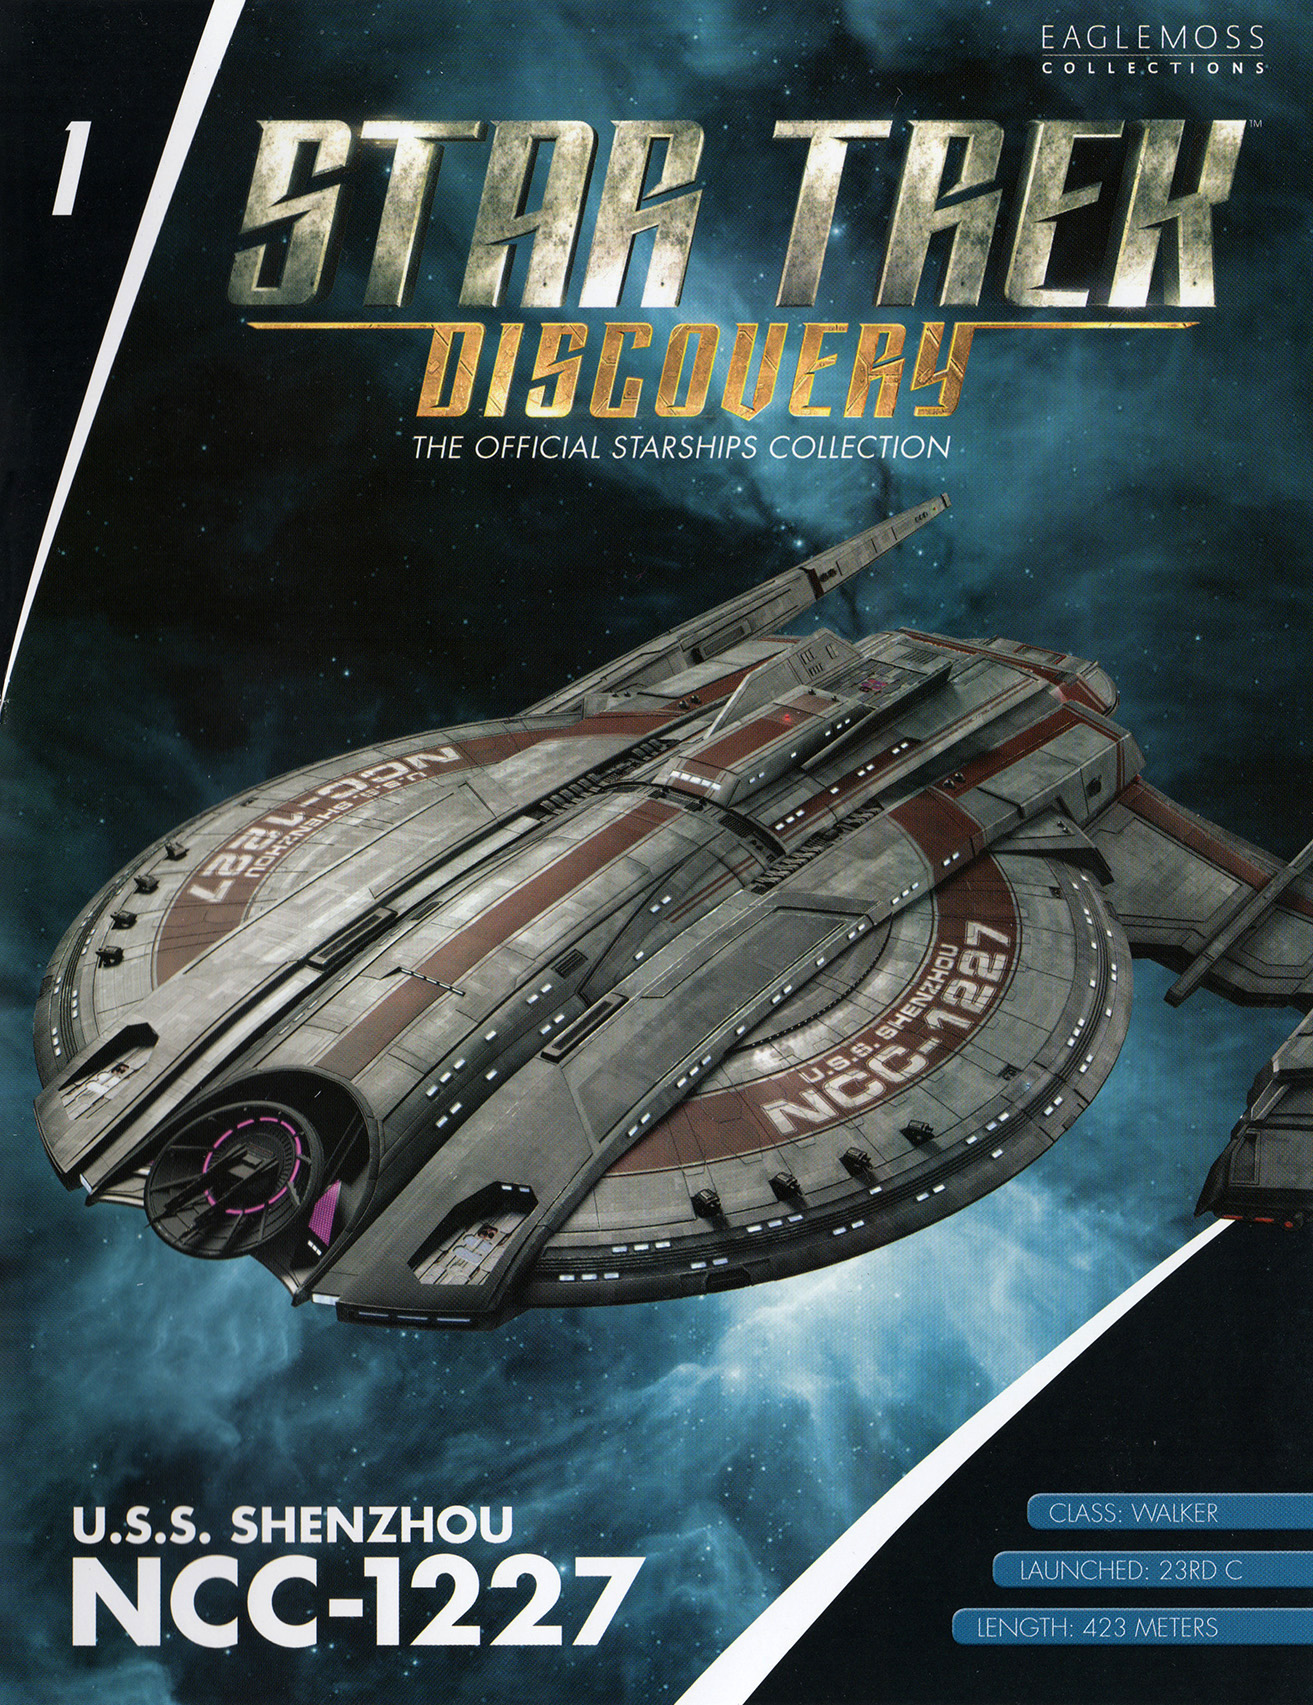 Eaglemoss Star Trek Starships Discovery Issue 1